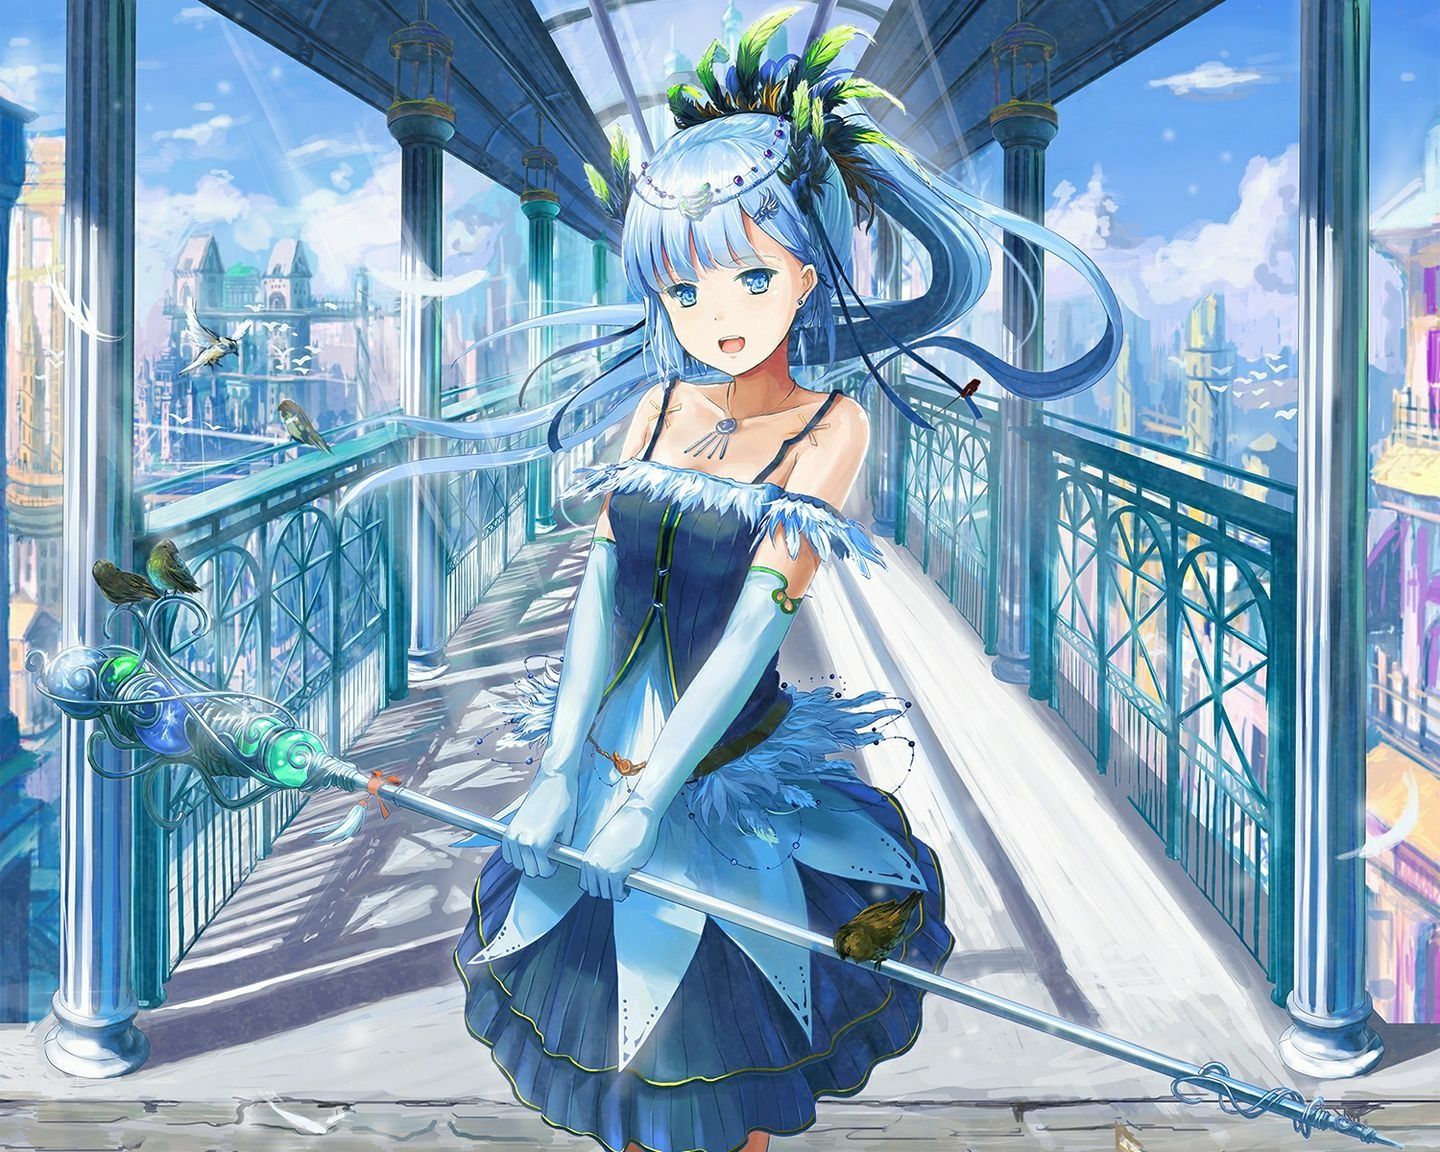 Fantasy anime girl with blue hair